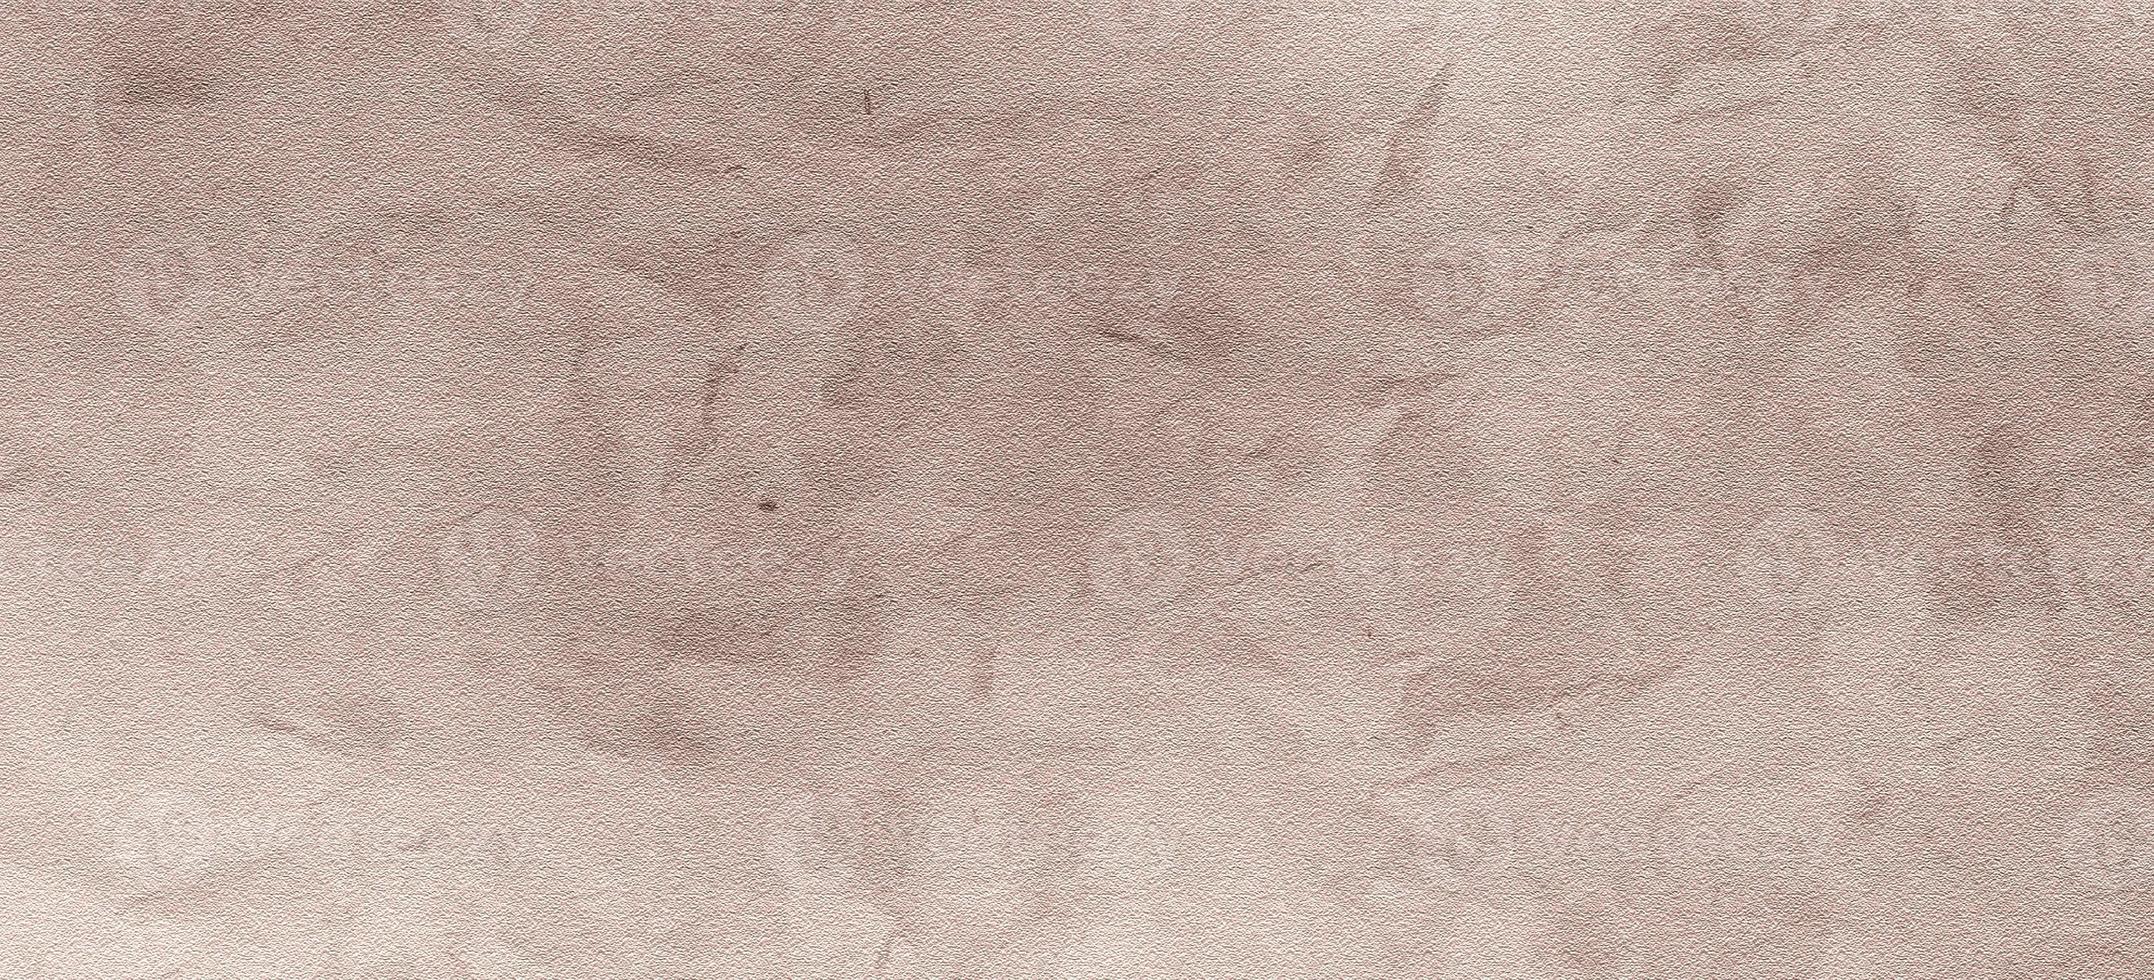 papel de cartón para el fondo. textura de papel de pergamino antiguo foto